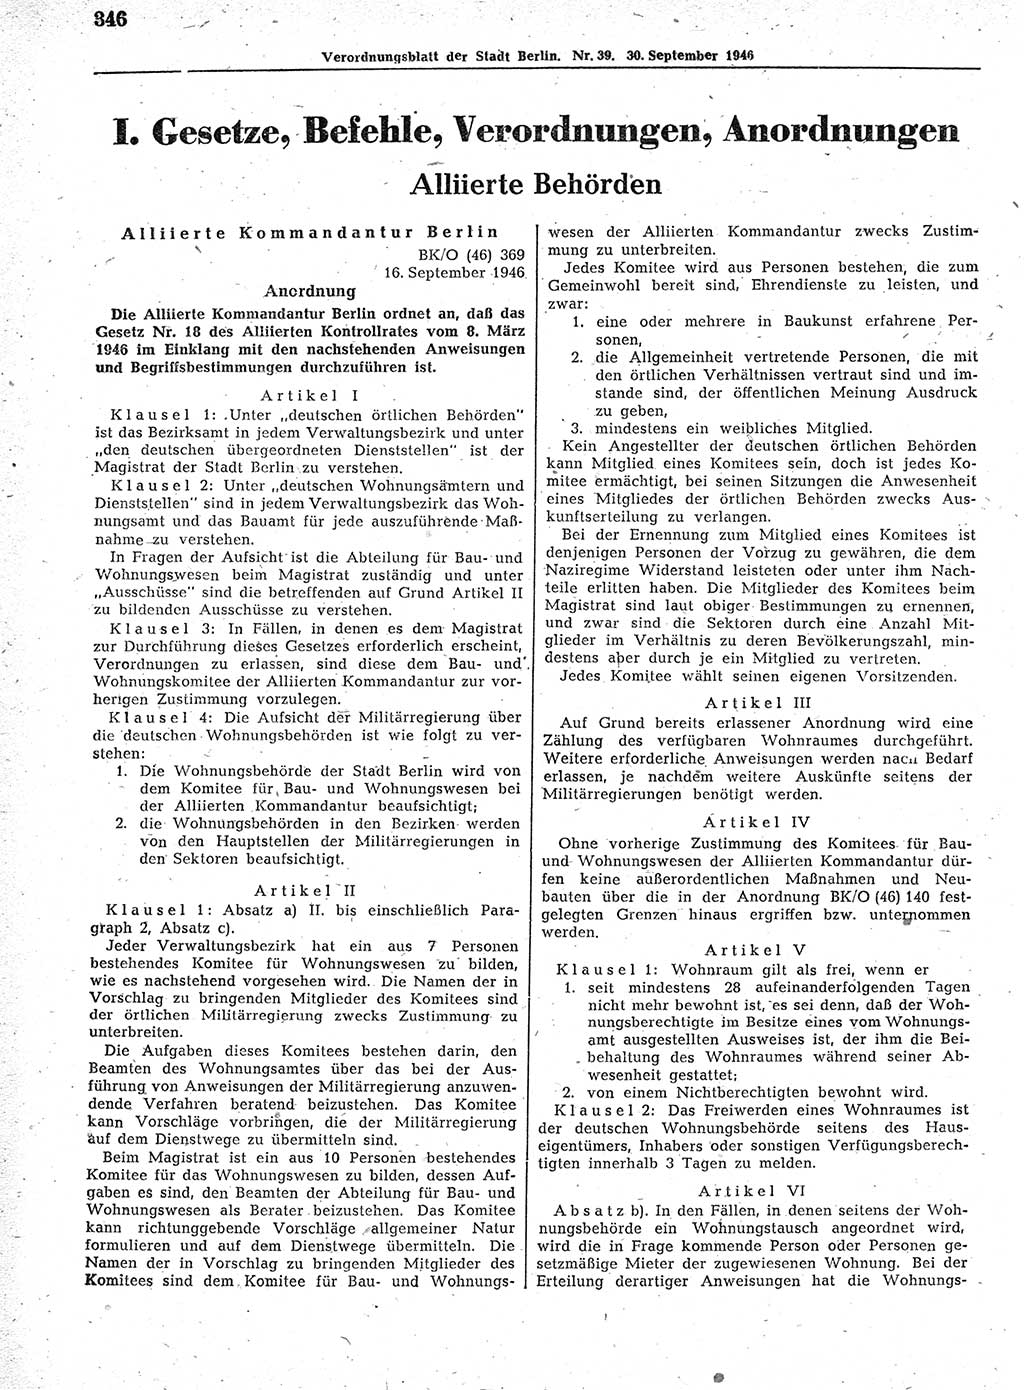 Verordnungsblatt (VOBl.) der Stadt Berlin, für Groß-Berlin 1946, Seite 346 (VOBl. Bln. 1946, S. 346)